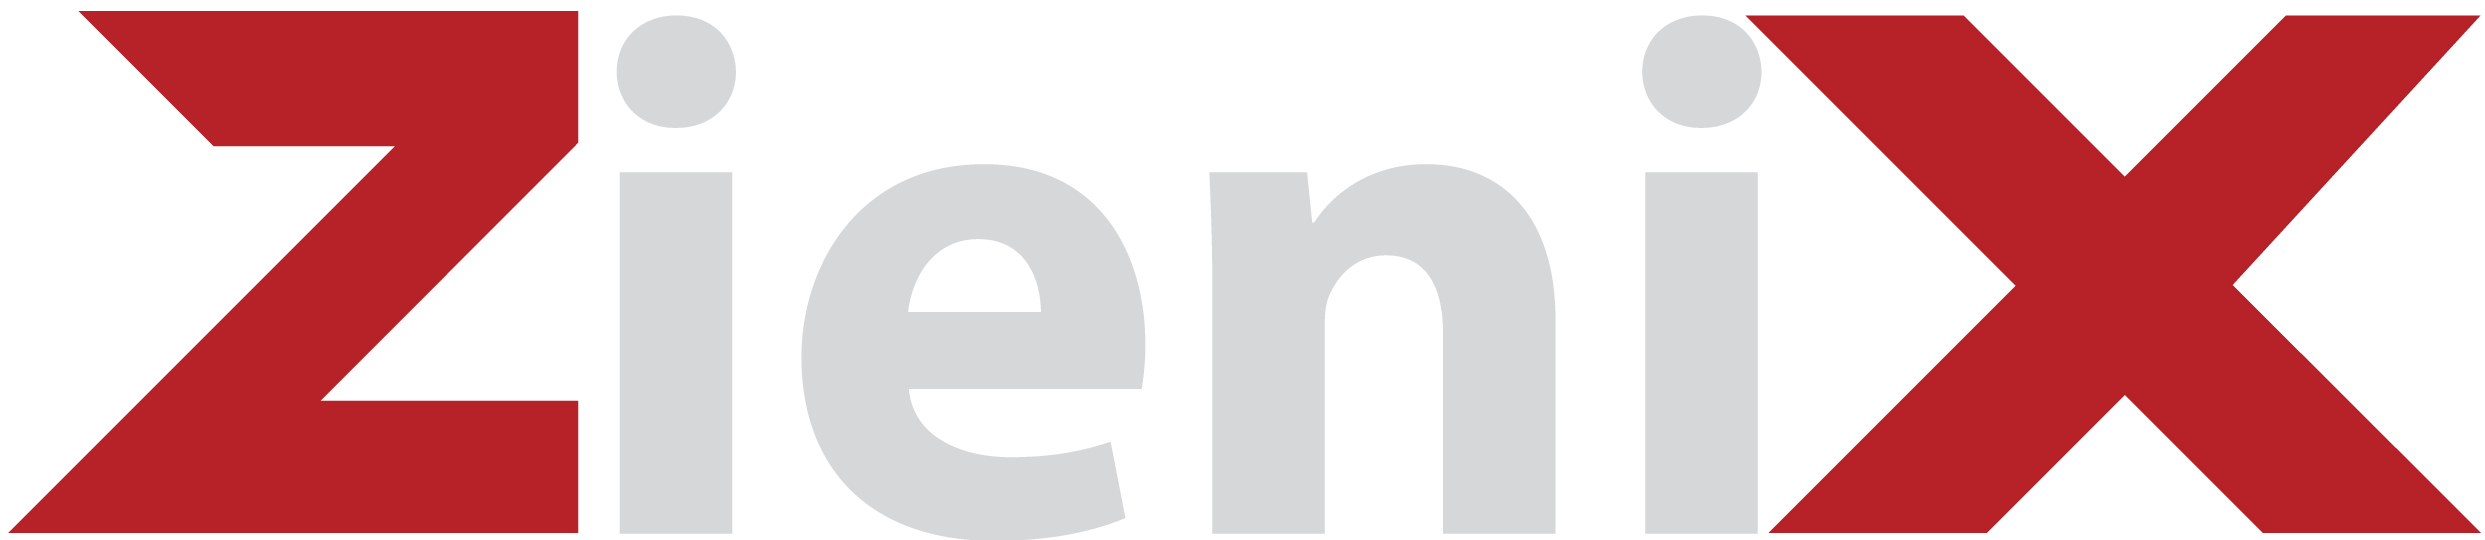 Zienix Online system